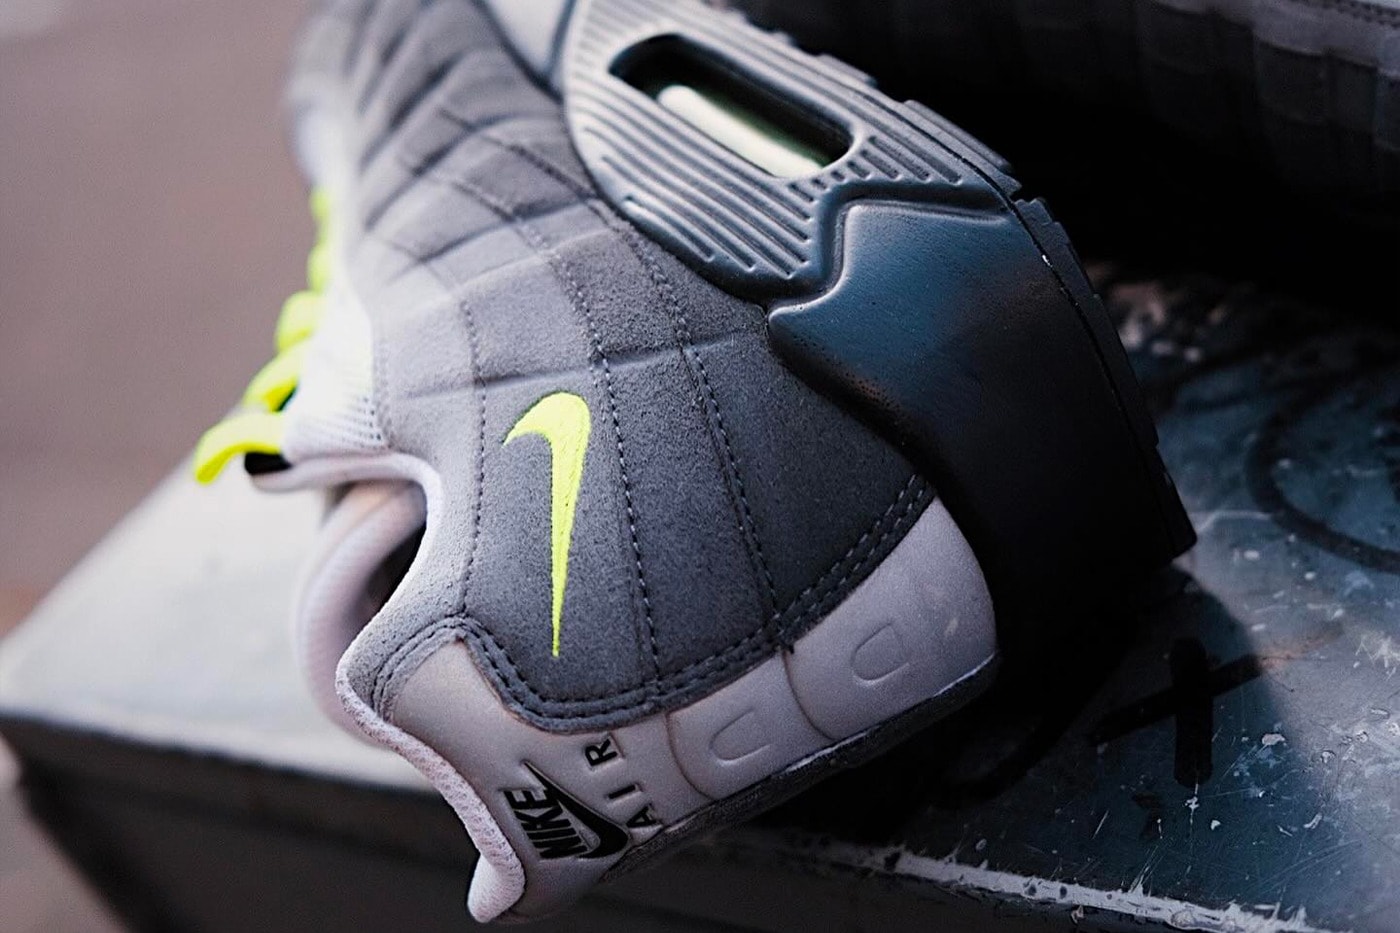 球鞋寄售店鋪 INDEX PORTLAND 曝光未上市 Nike Air Max 95/90「Neon」樣本鞋